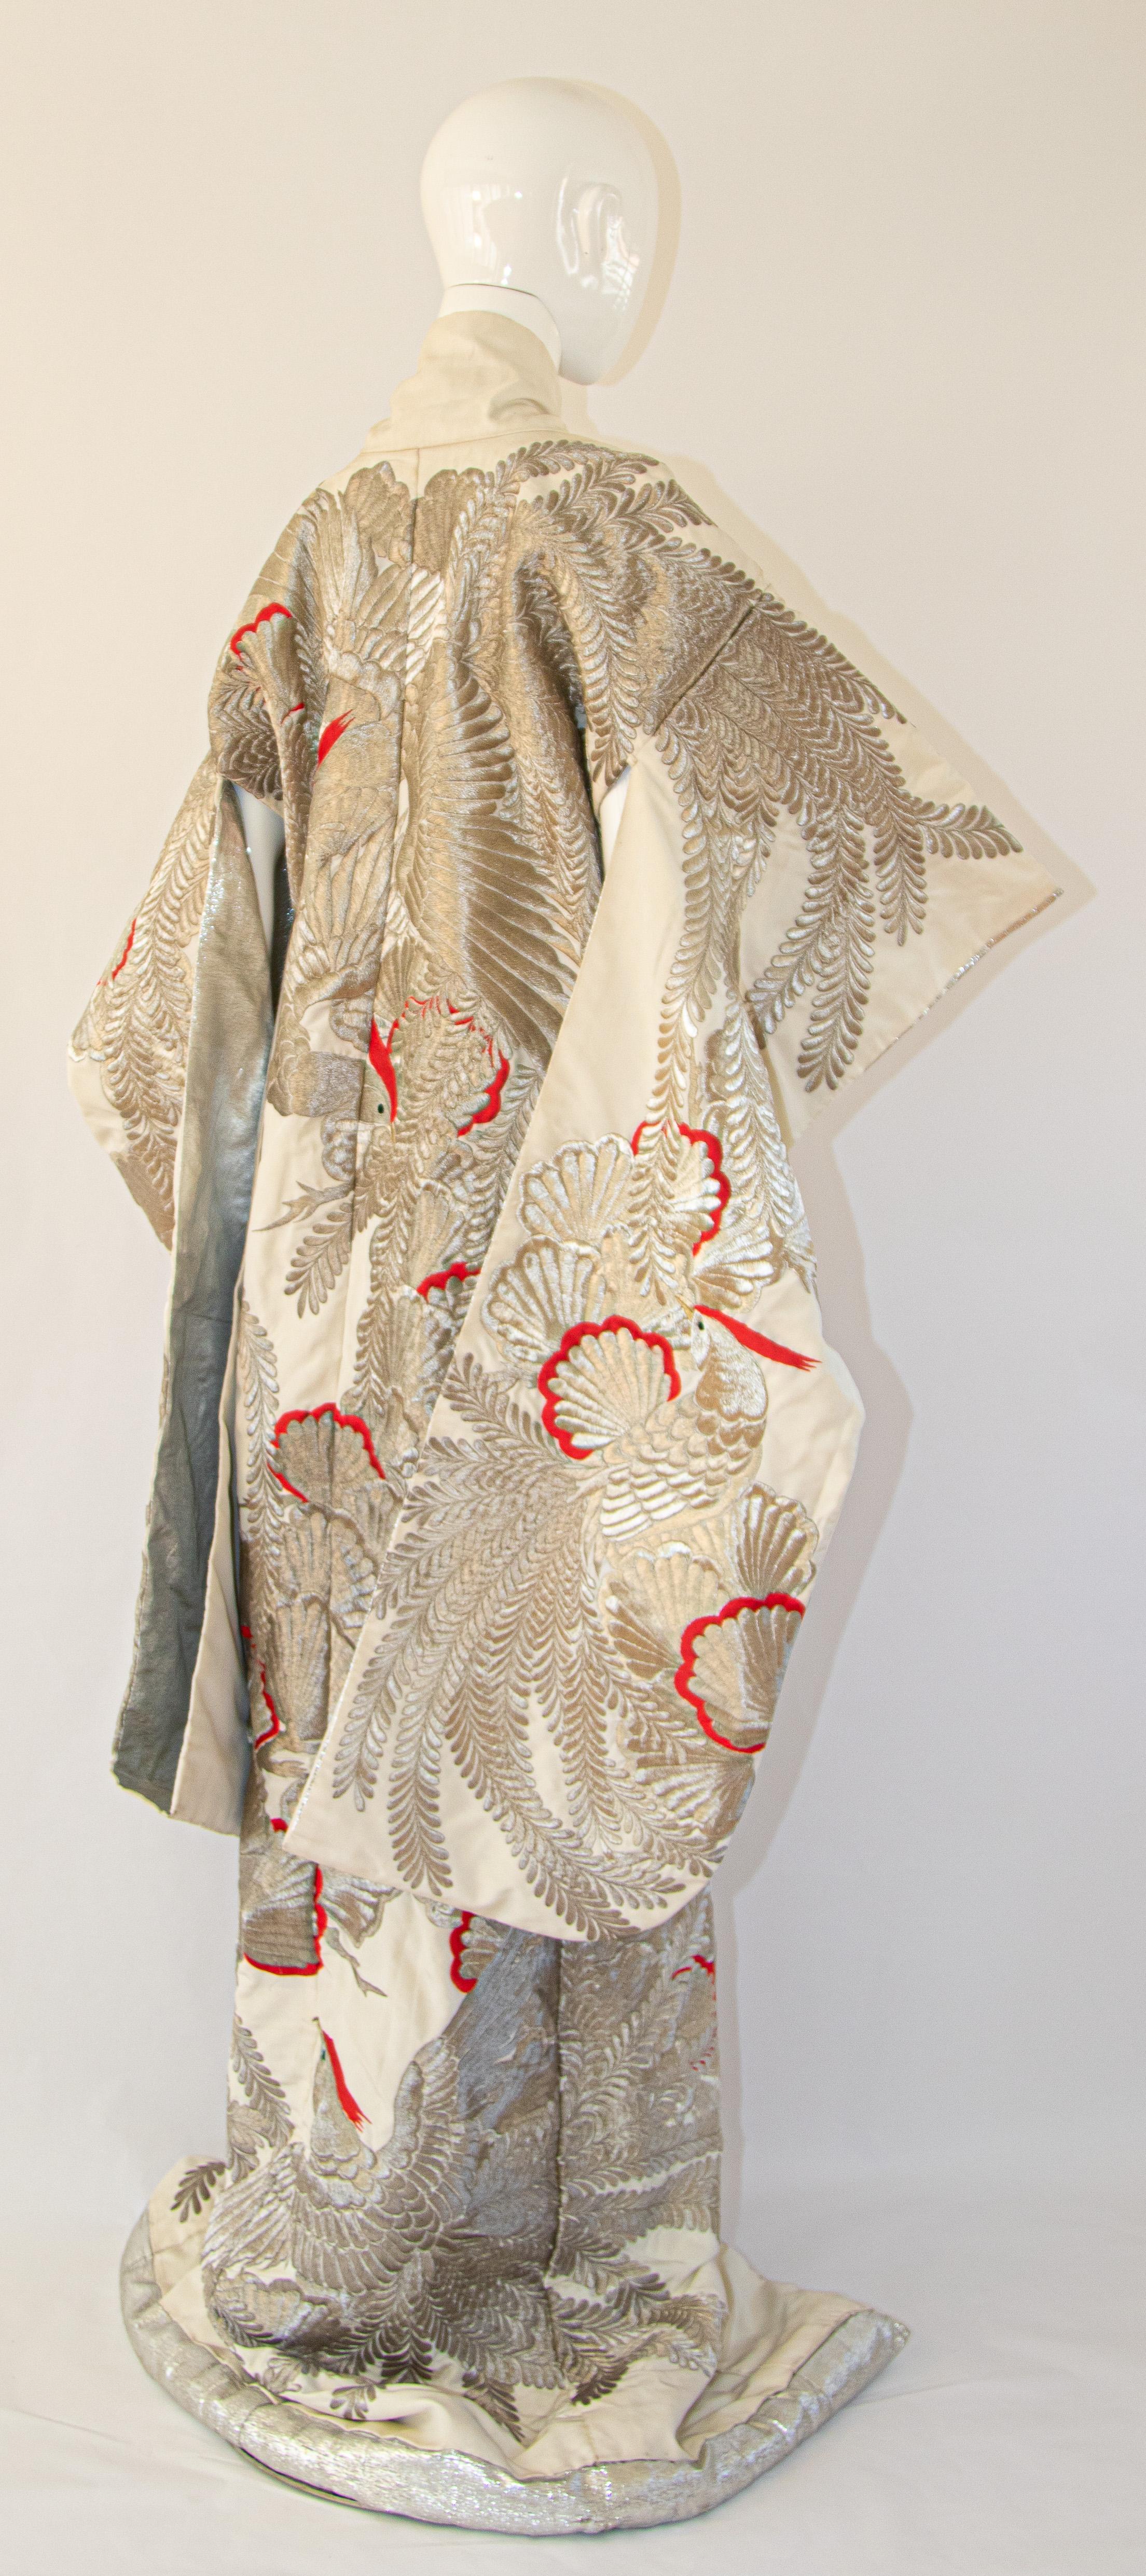 Ein Vintage Mitte des Jahrhunderts Elfenbein und Silberfaden Seidenbrokat Sammlerstück japanischen zeremoniellen Hochzeit Kimono.
Einzigartiges, handgefertigtes Zeremonienstück in Museumsqualität aus reiner Seide mit aufwändiger, detaillierter